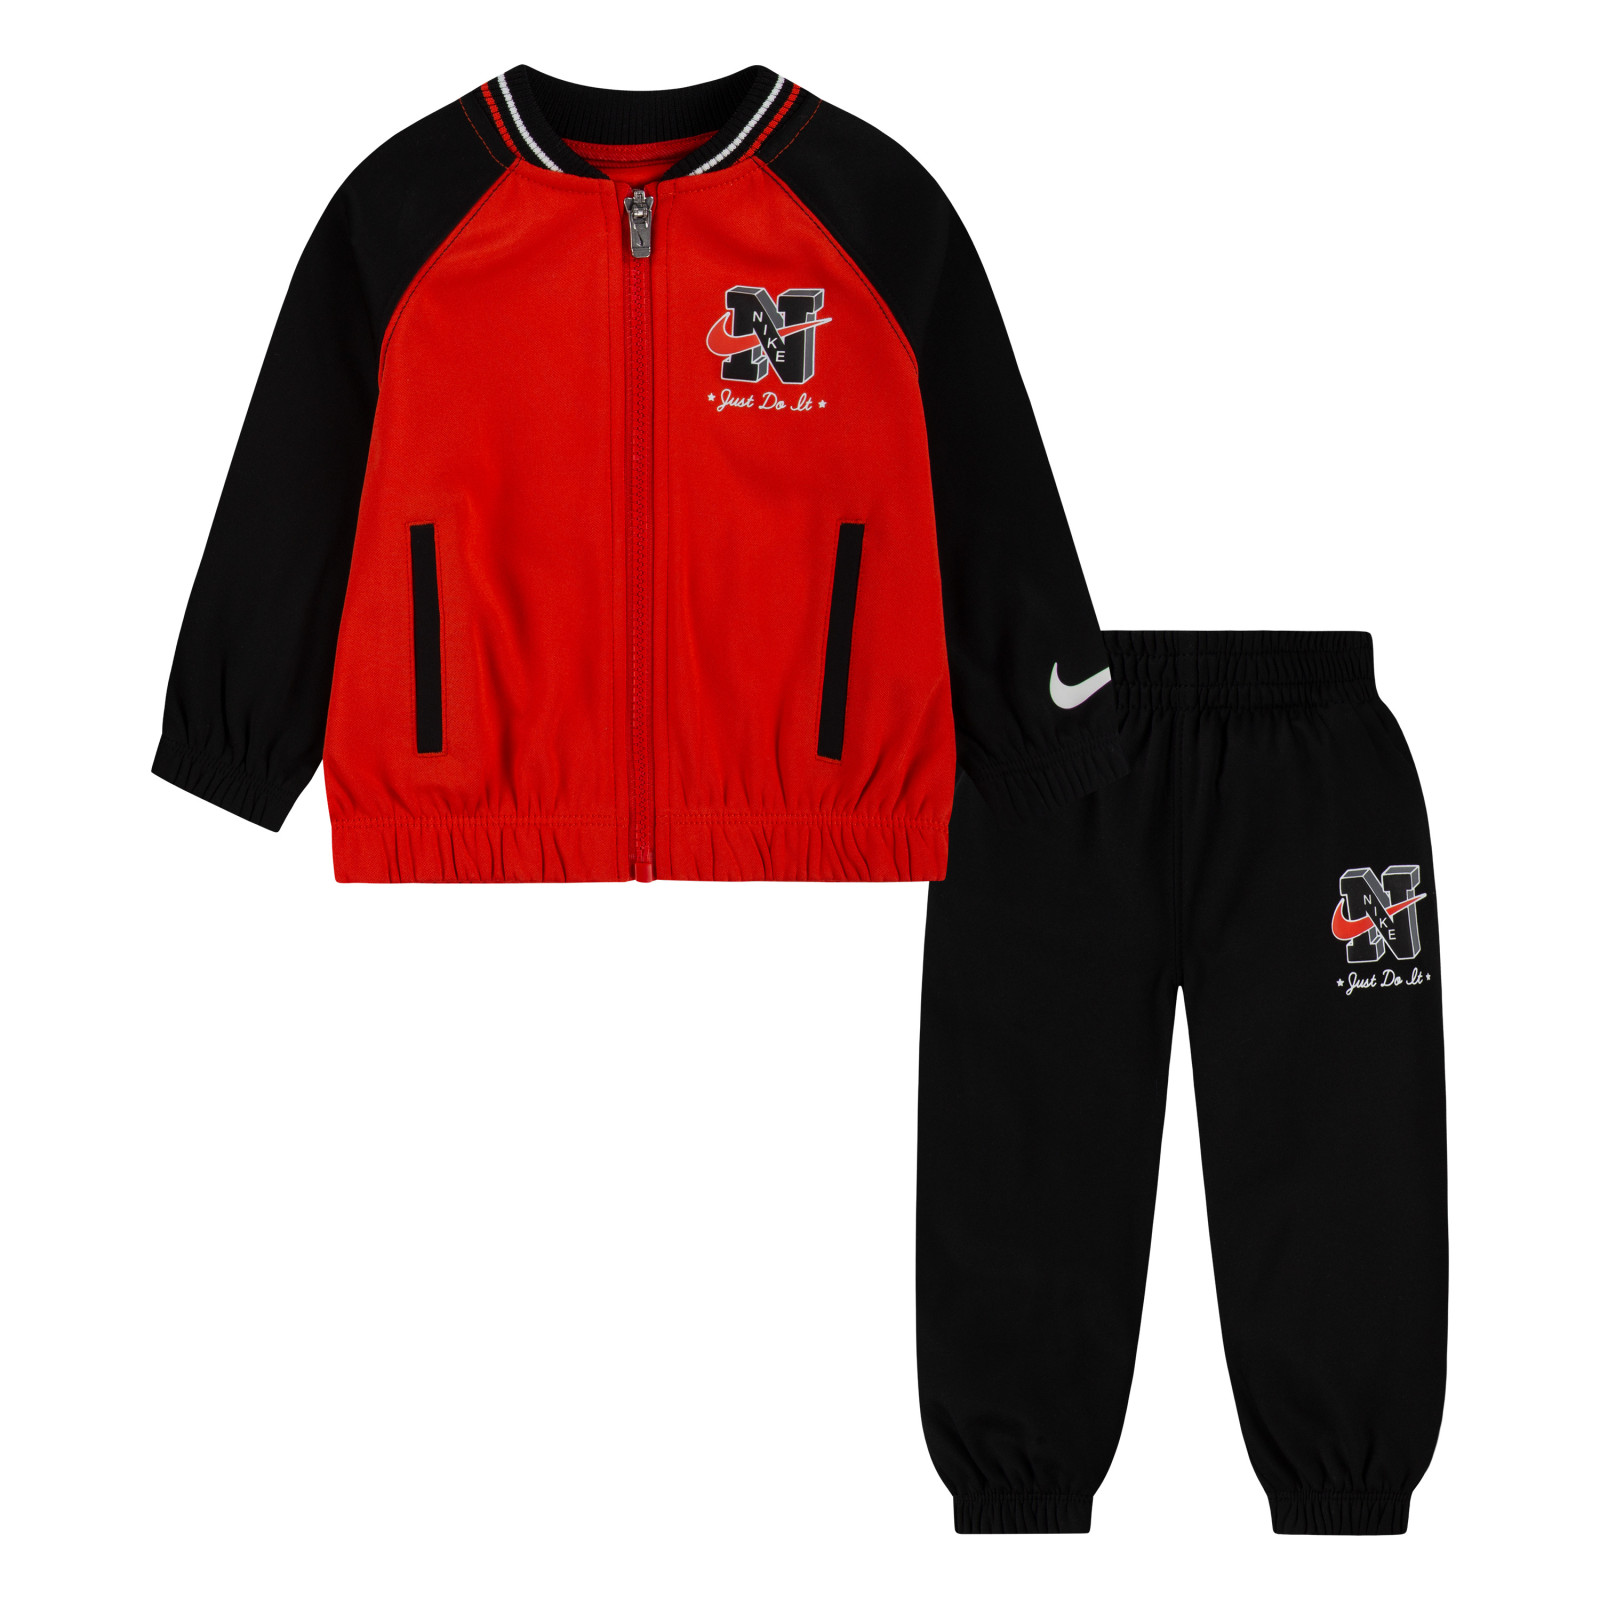 Nike b nsw next gen tricot set 80-86 cm